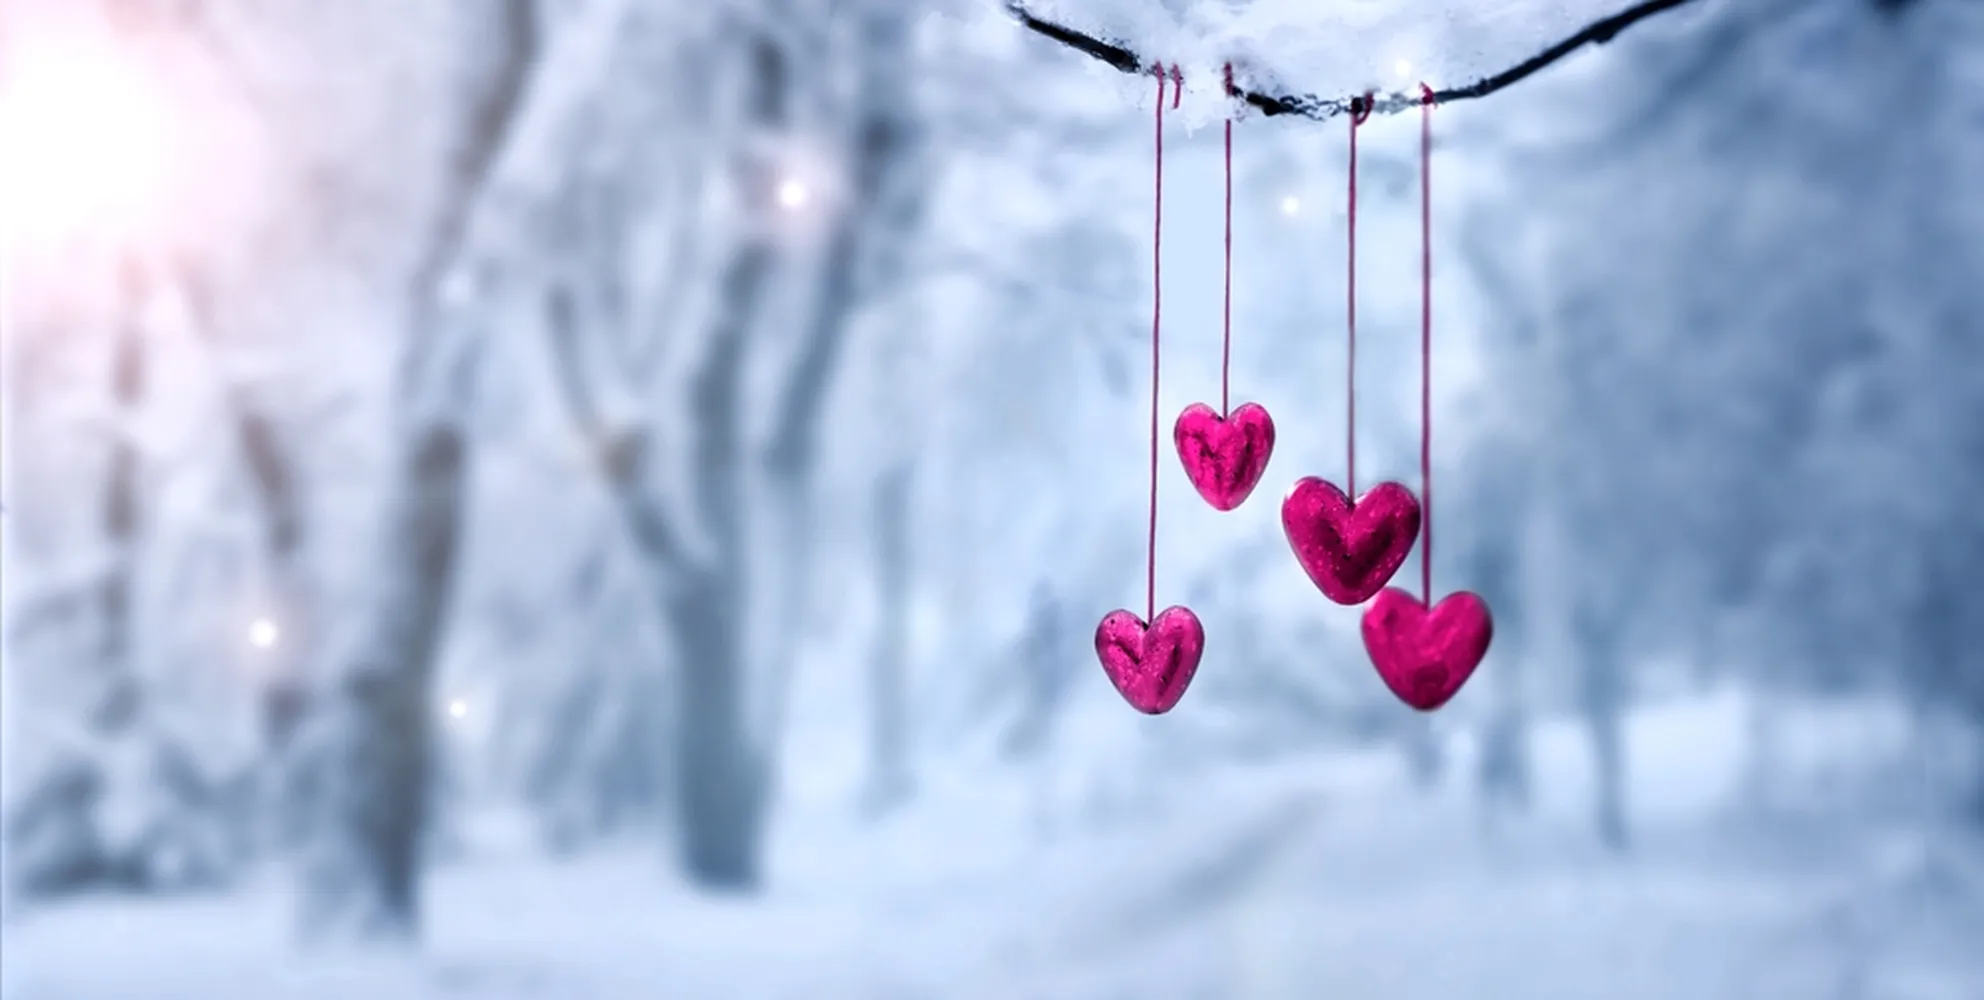 پوستر عاشقانه طرح قلب روی شاخه برفی